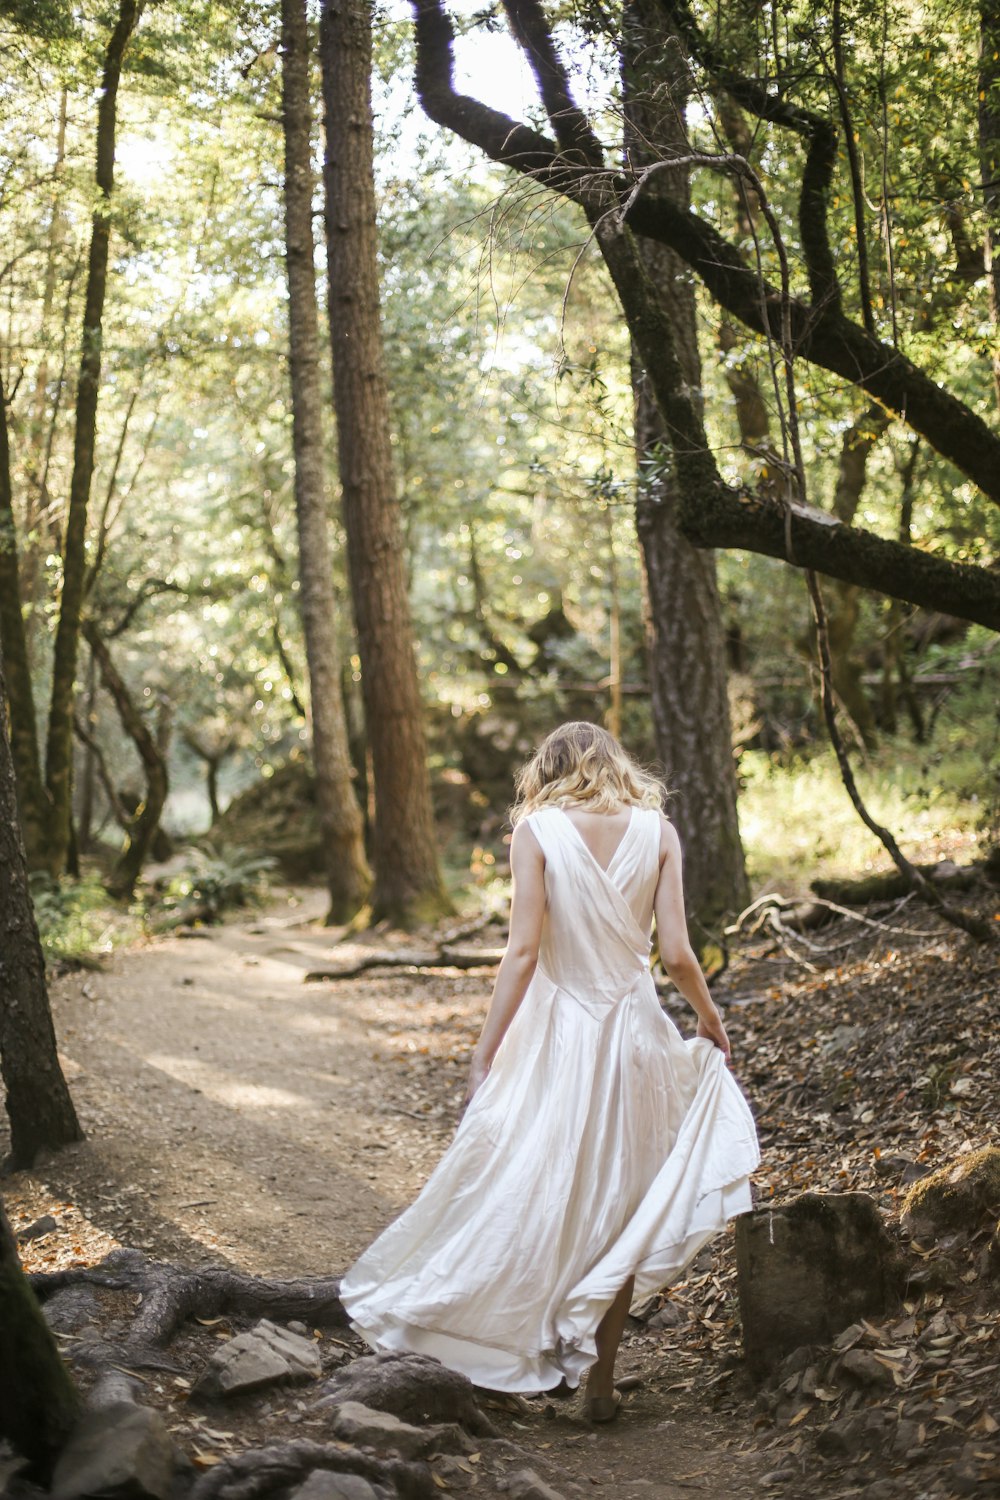 mulher no vestido branco de pé no solo marrom cercado por árvores verdes durante o dia